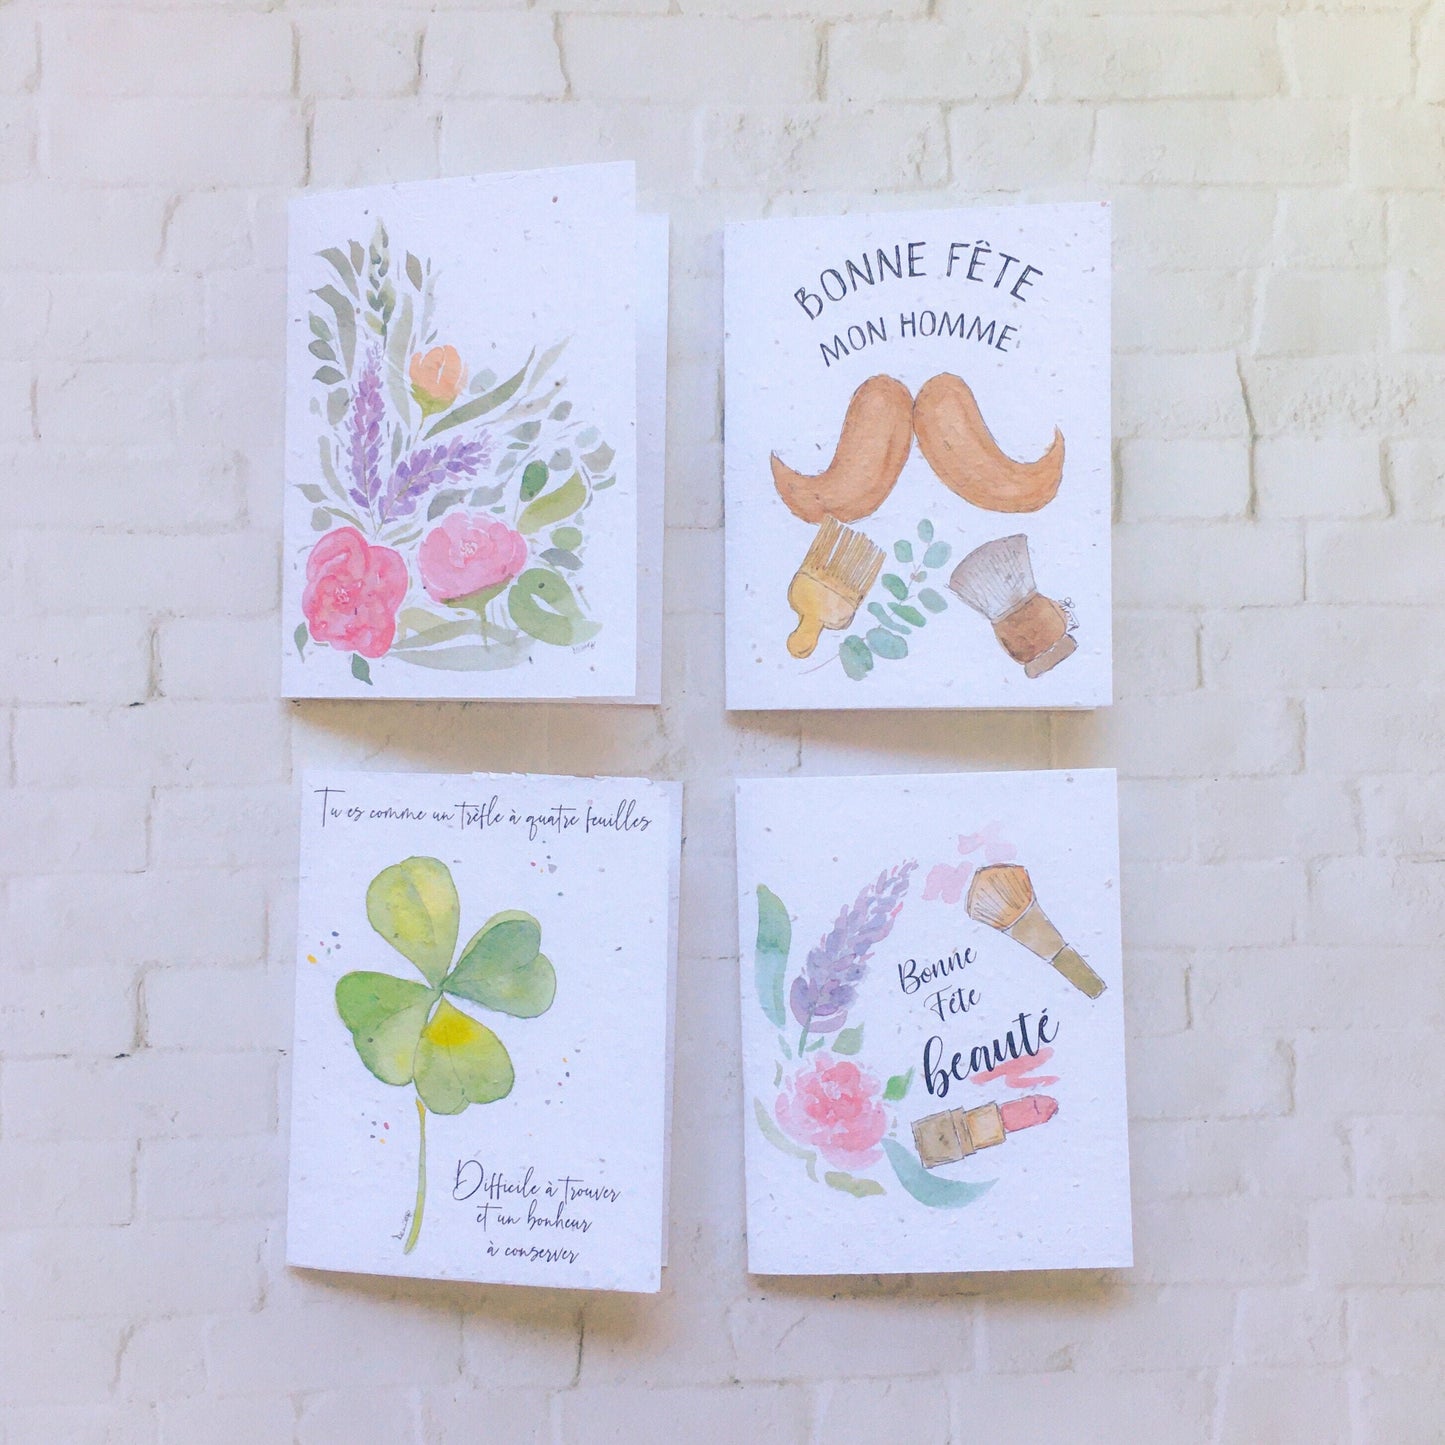 Seed paper greeting card - Bonne fête beauté